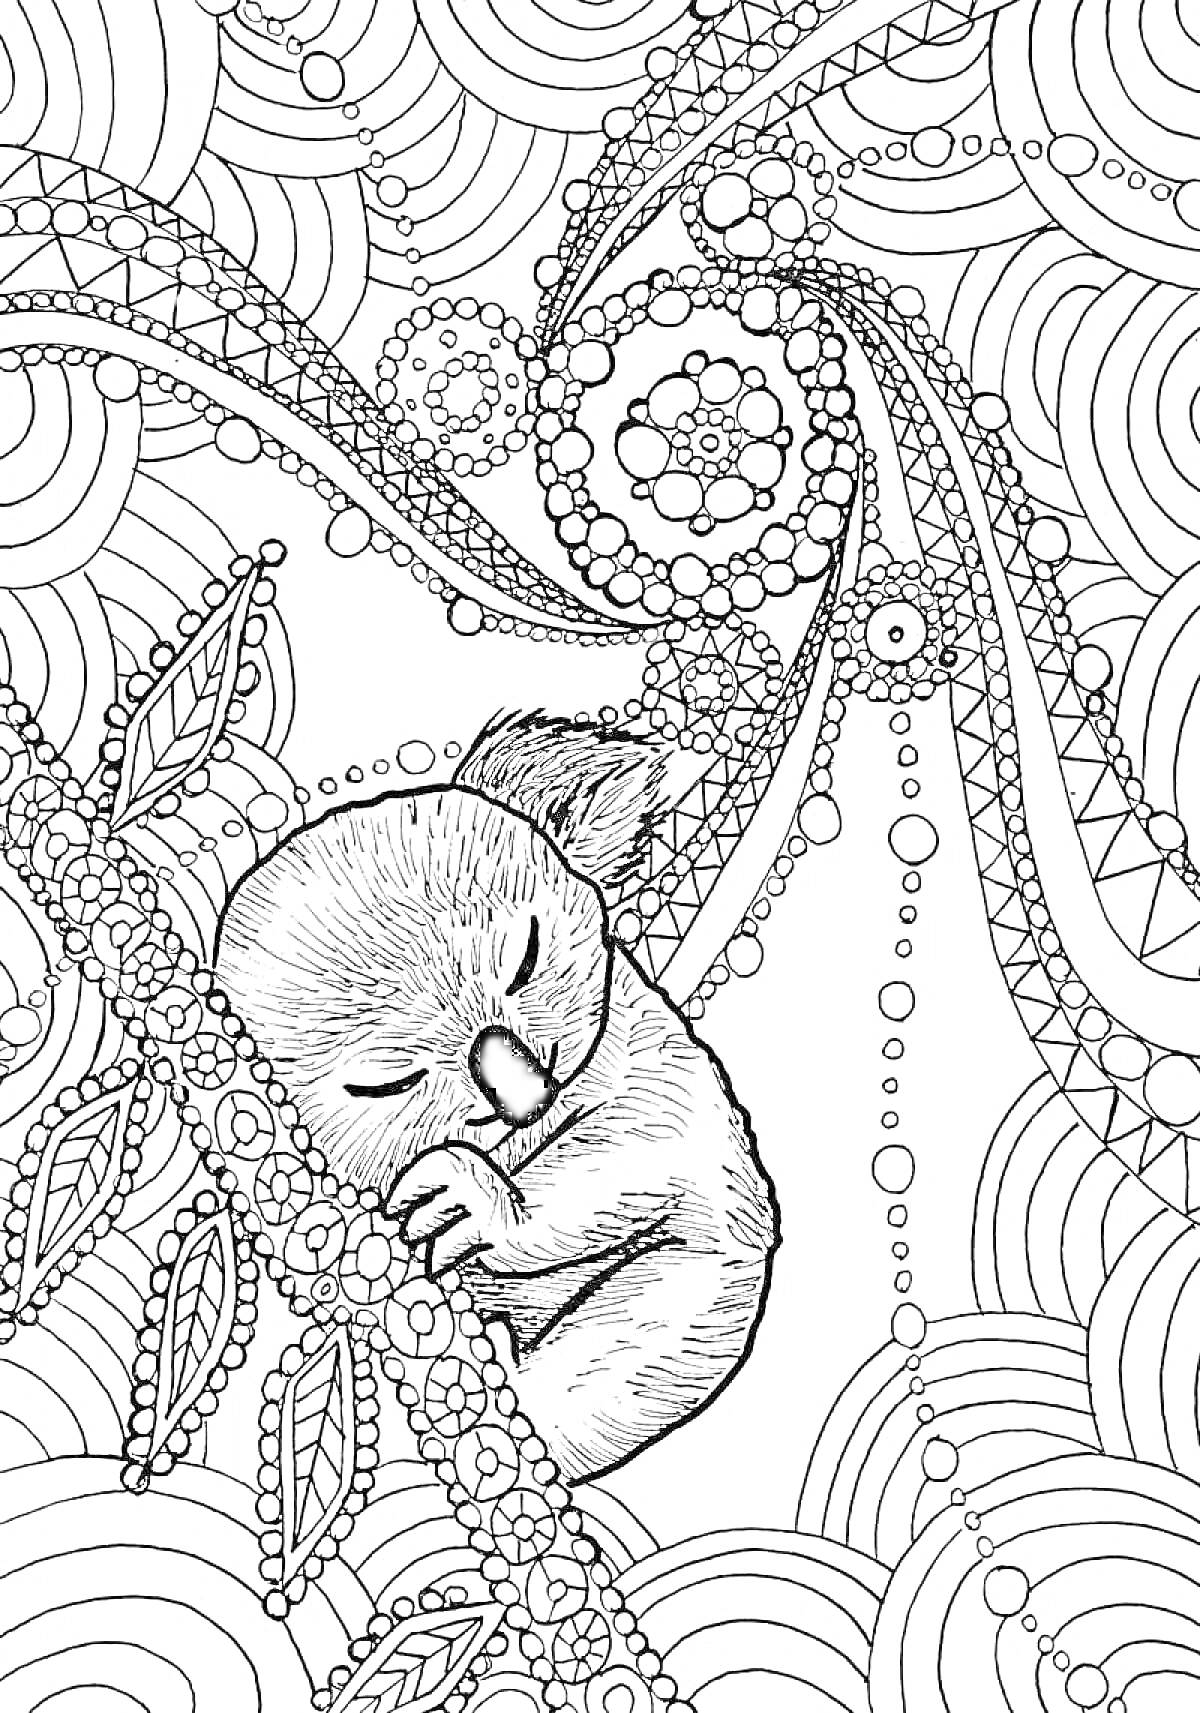 Раскраска Спящая коала на ветке с узорами, листьями и круговыми узорами